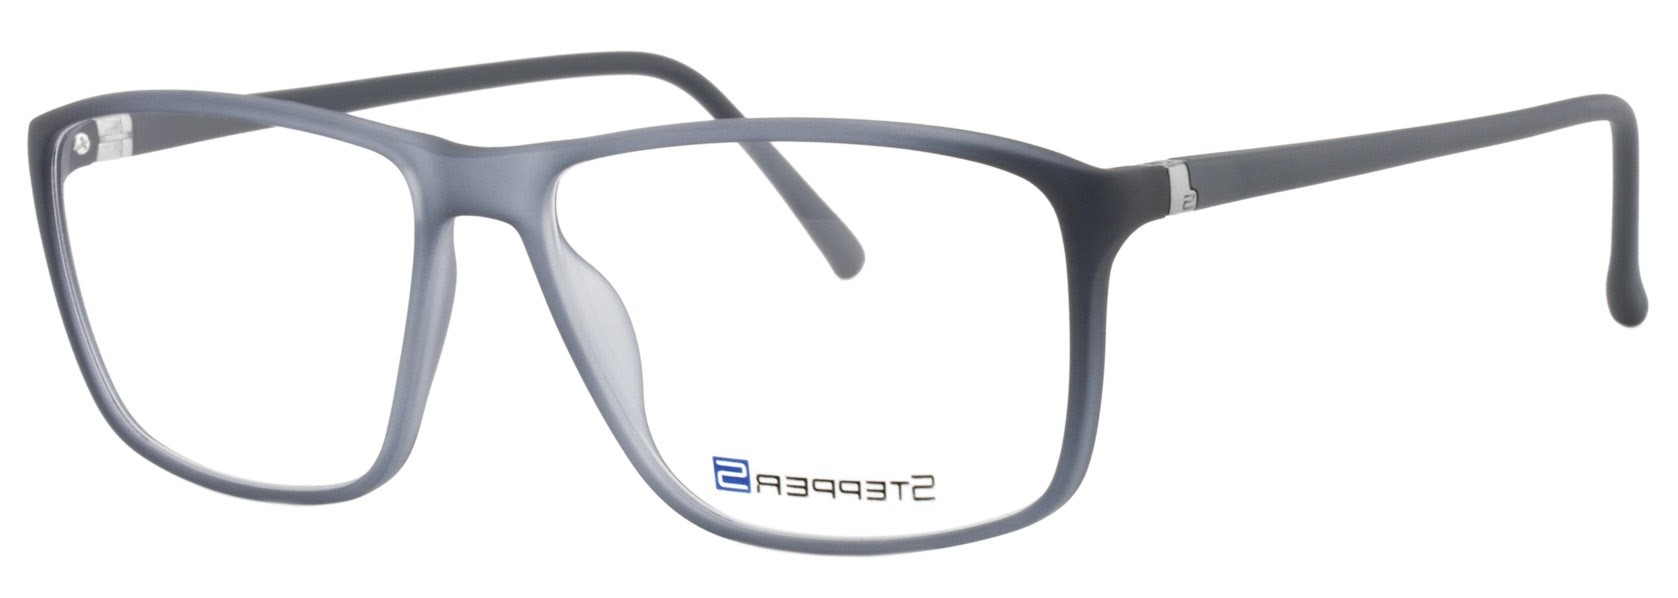 Stepper 10086 F520 - Oculos de Grau